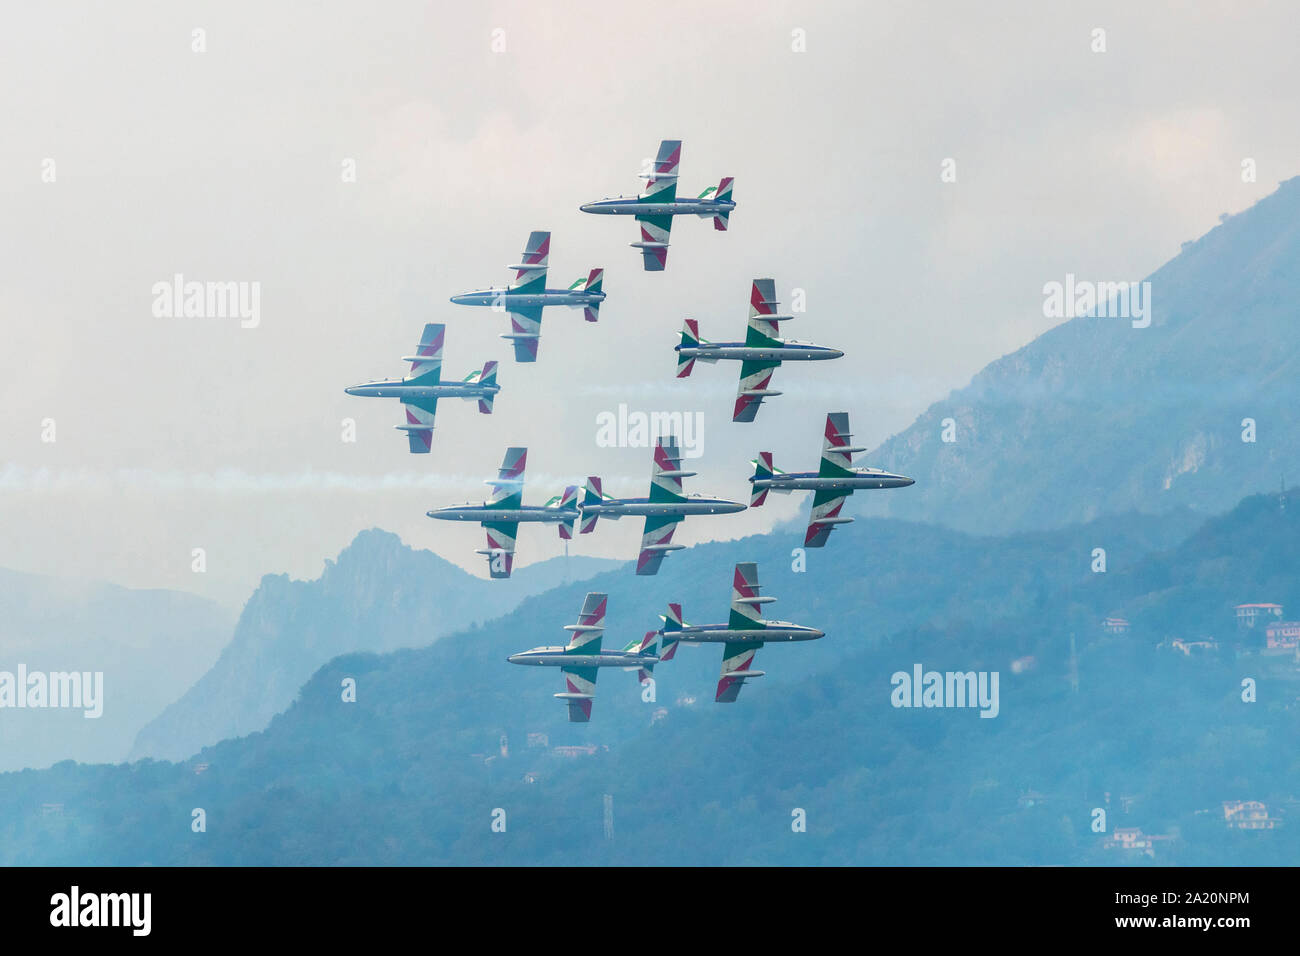 Varenna, Italien - September 29, 2019: Das Team Der kunstflugstaffel "Dreifarbige Pfeile' der italienischen militärischen Luftfahrt führt über See Lecco während einer airsh Stockfoto